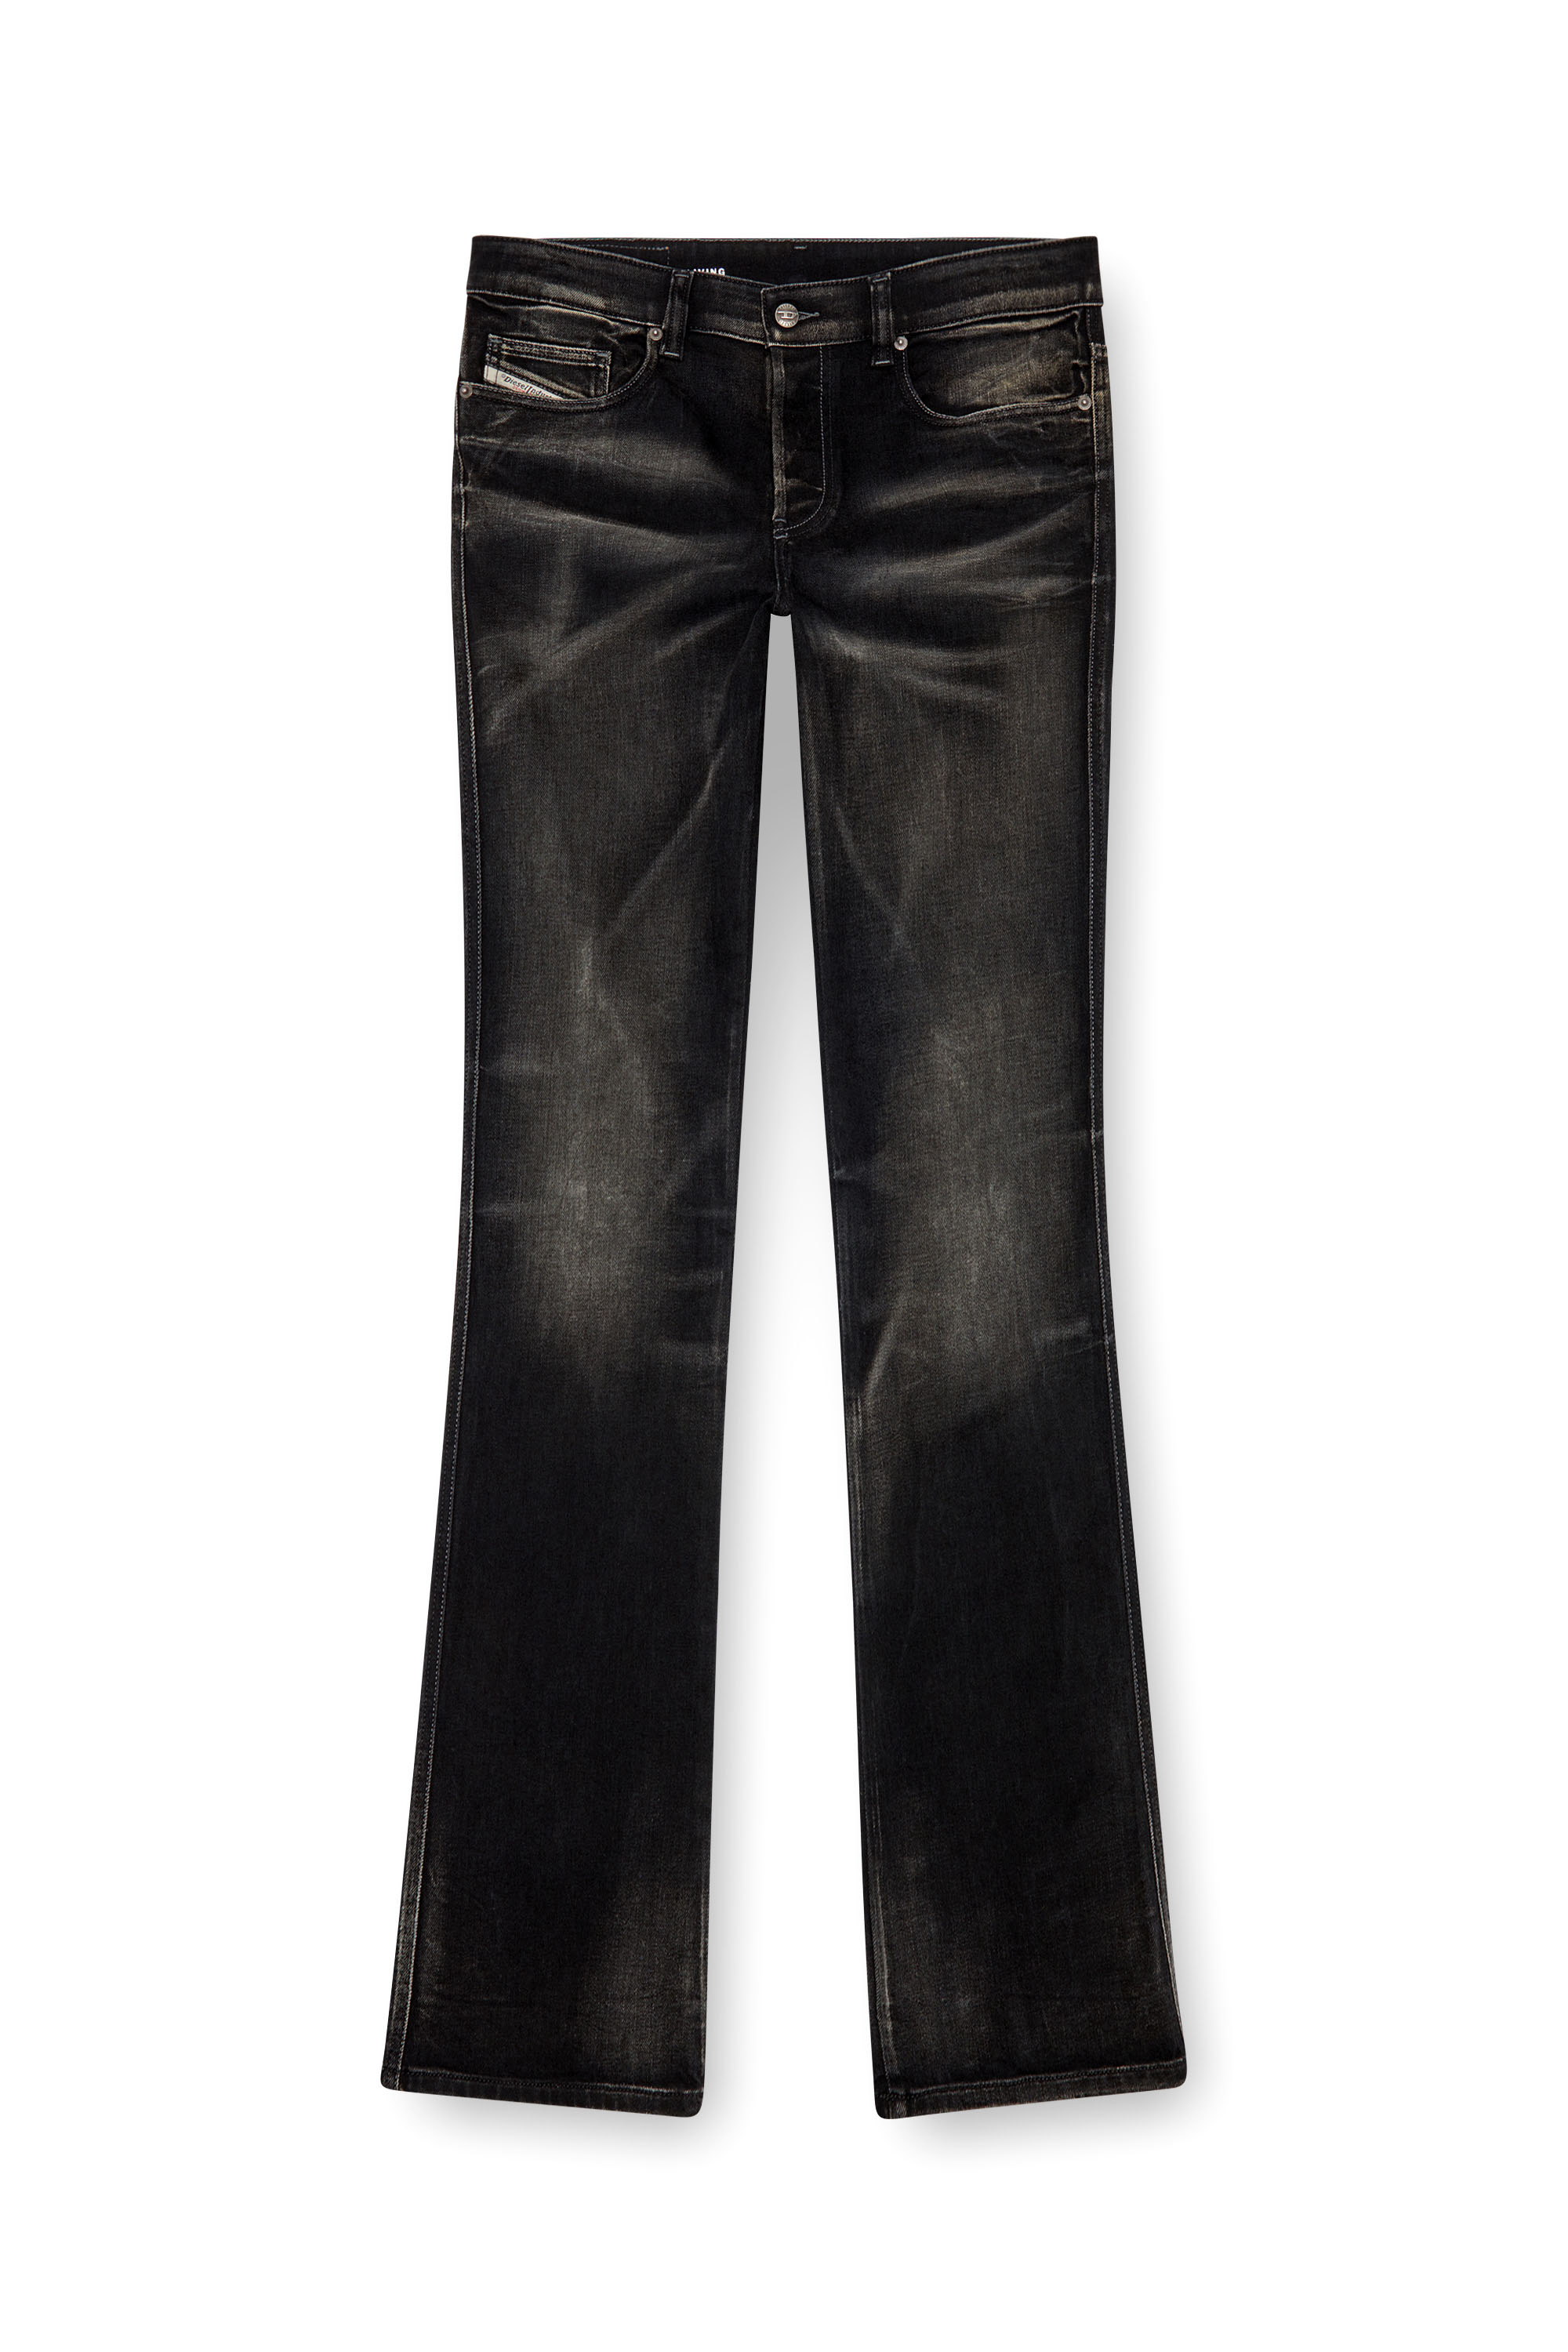 Diesel - Man Bootcut Jeans 1998 D-Buck 09J53, Black/Dark grey - Image 5